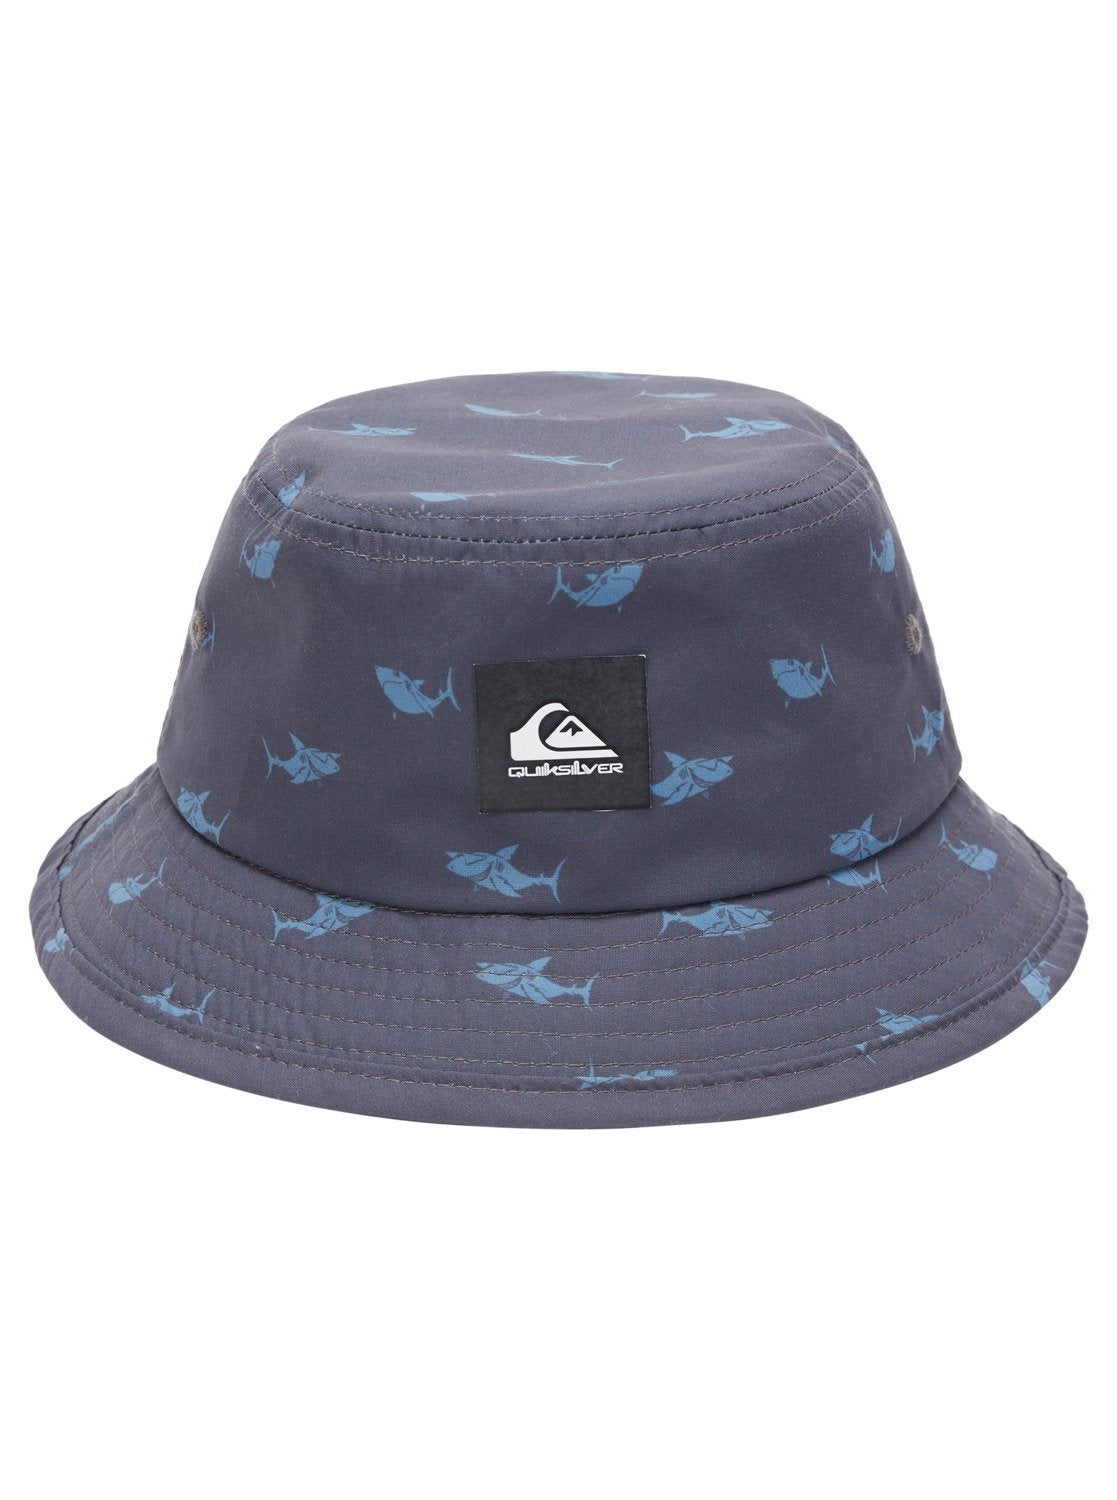 Boy's 2-7 Flounders Reversible Bucket Hat